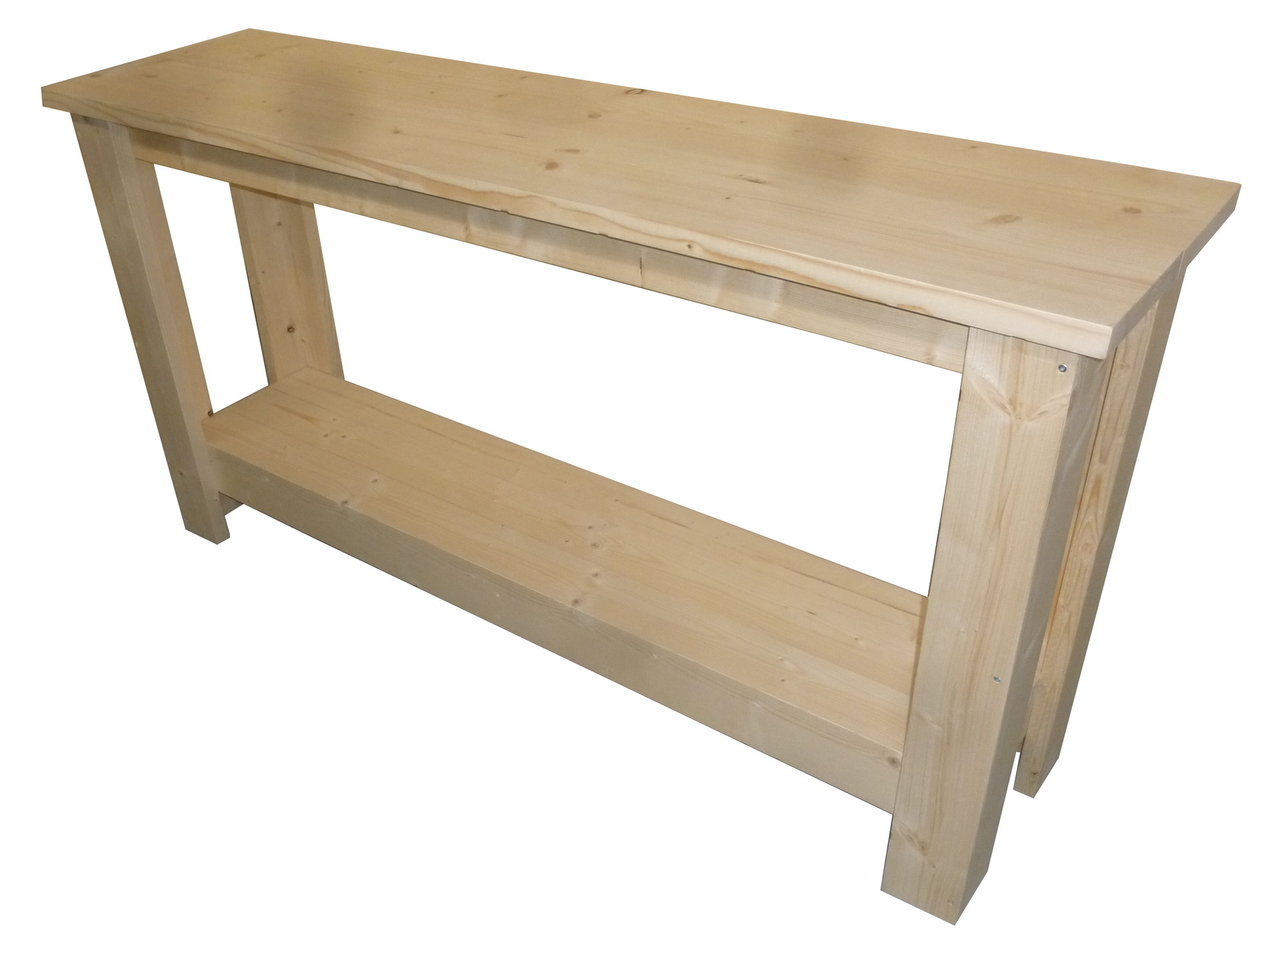 Vliegveld Hertogin Calamiteit Side table steigerhout bouwpakket - Woodkit